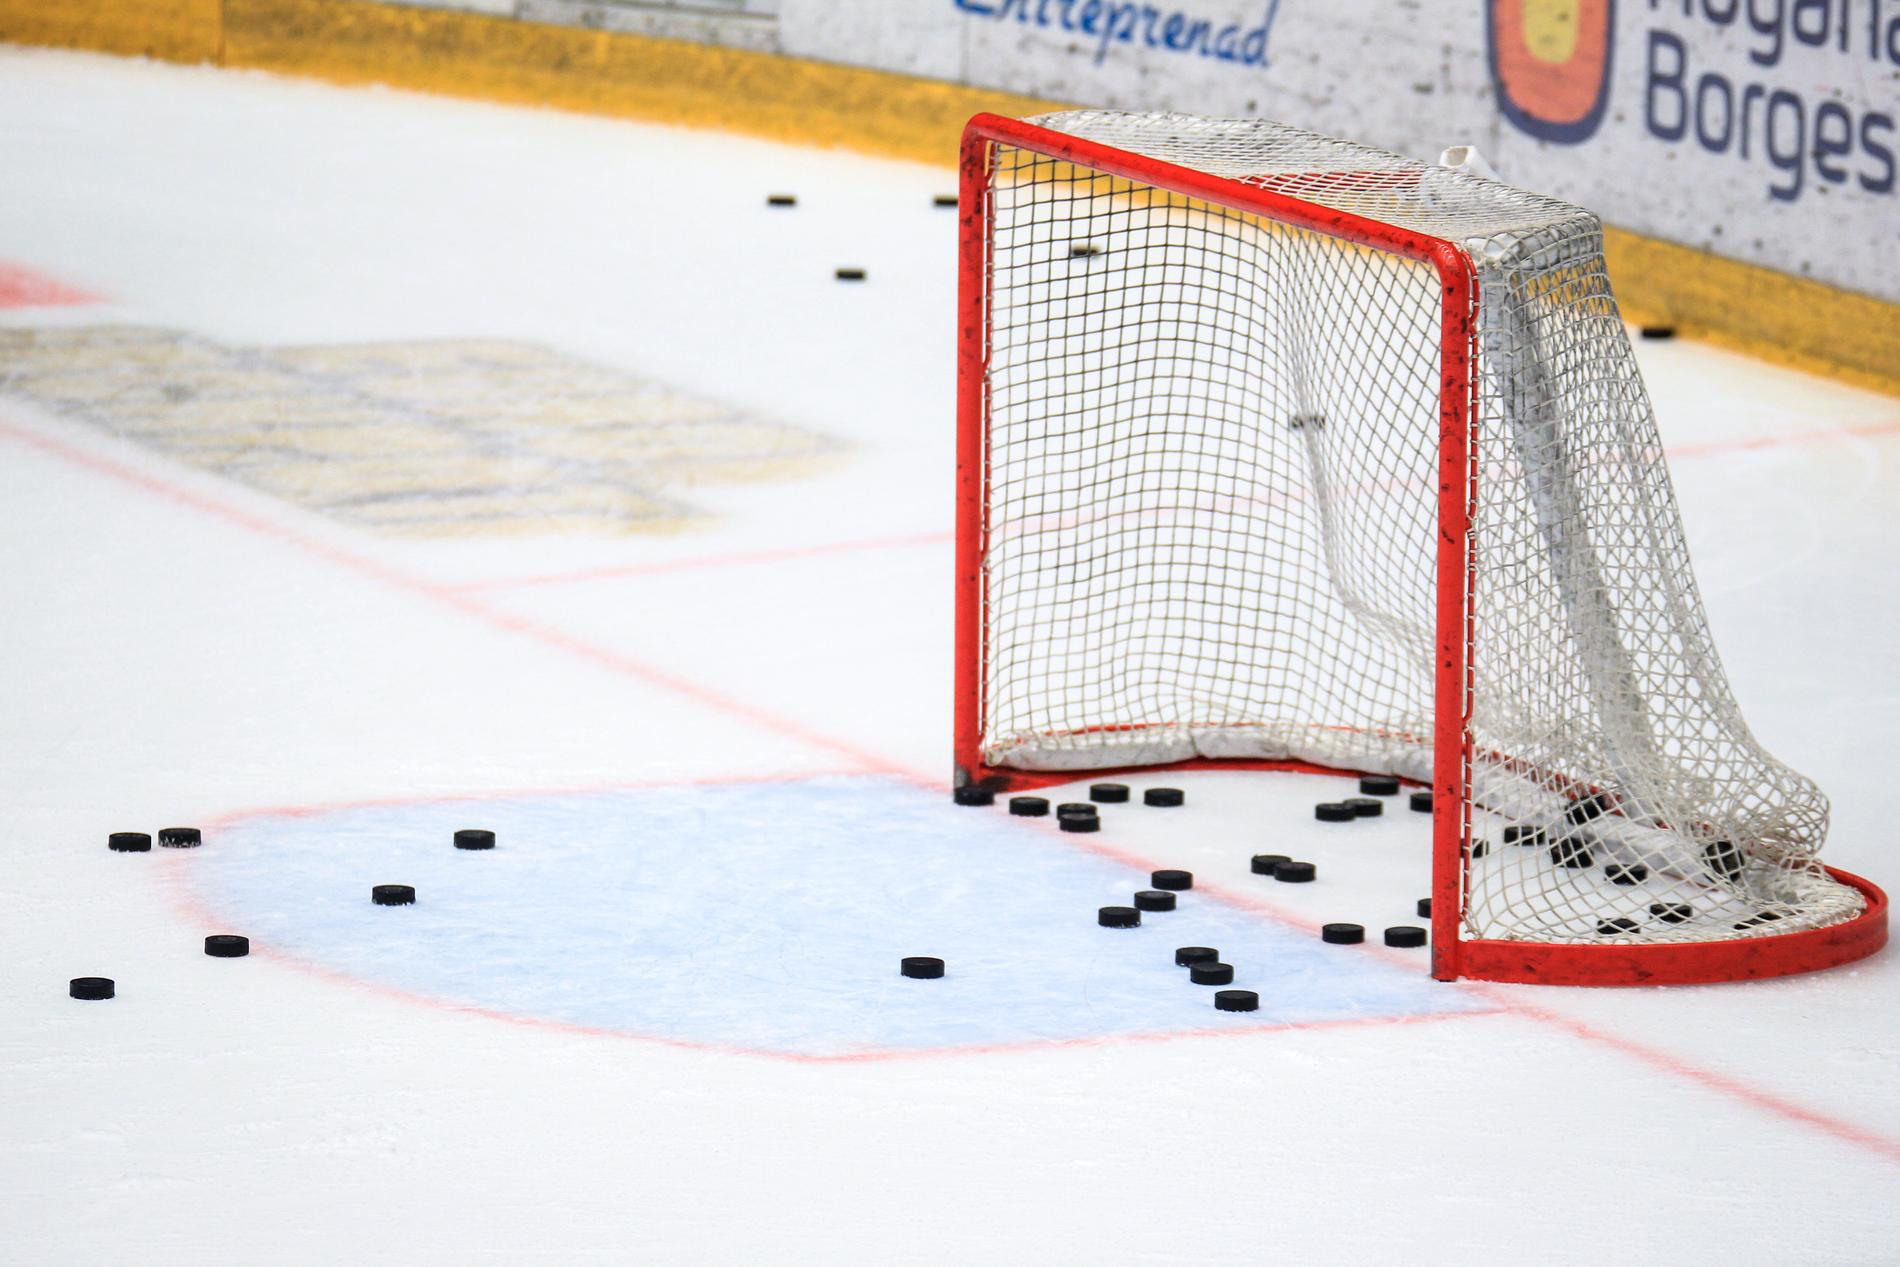 Hockeyallsvenskan har på lördagen haft ett krismöte efter skandalen i matchen mellan Kristianstad och Tingsryd. Arkivbild.